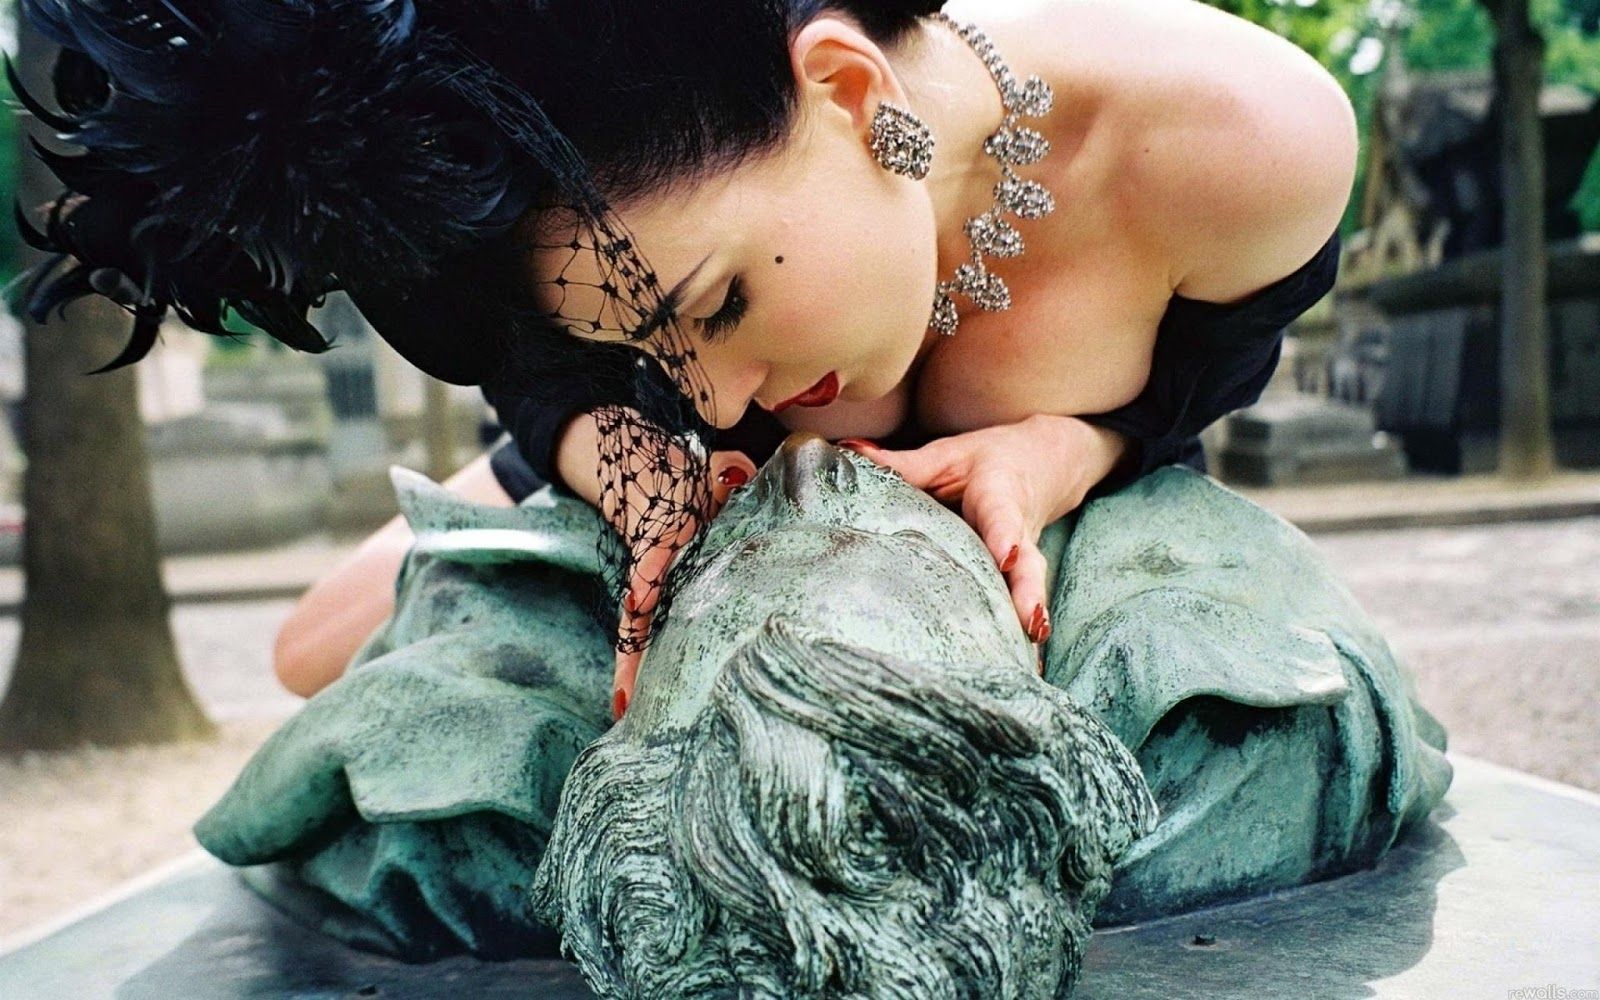 La modelo erótica Dita Von Teese besa la estatua de Victor Noir.